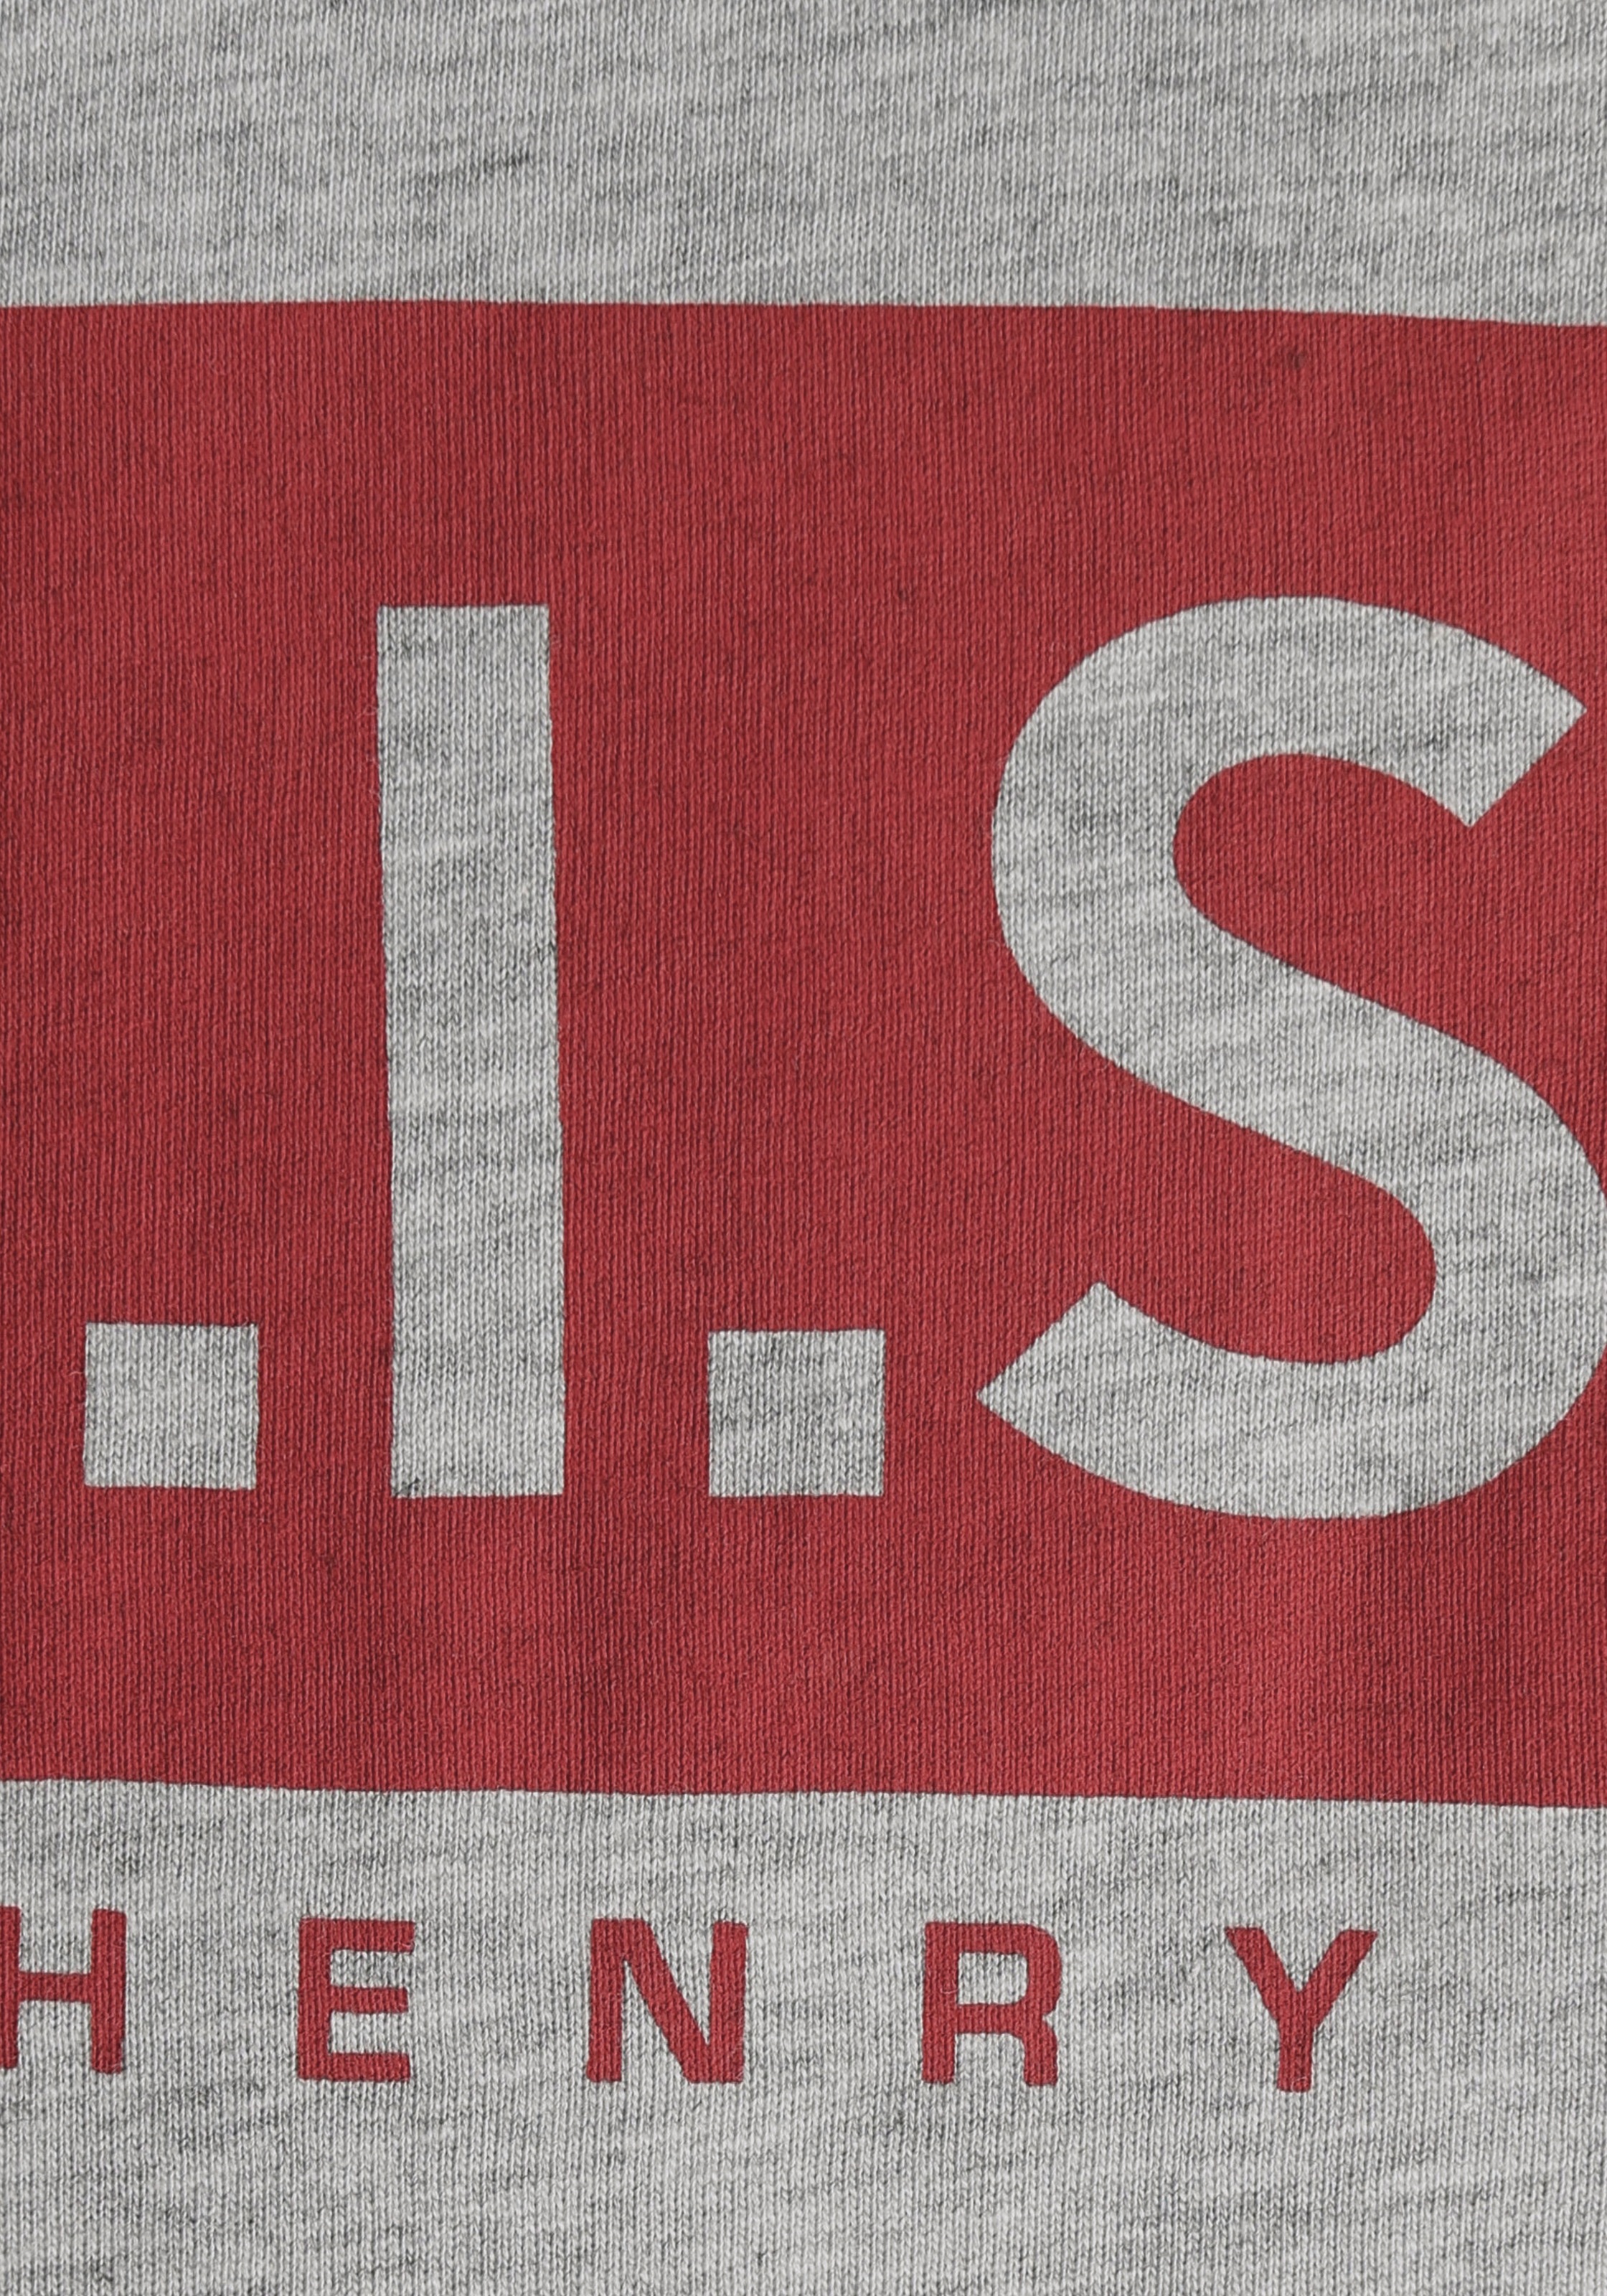 H.I.S Rundhalsshirt, mit Logo-Print vorne